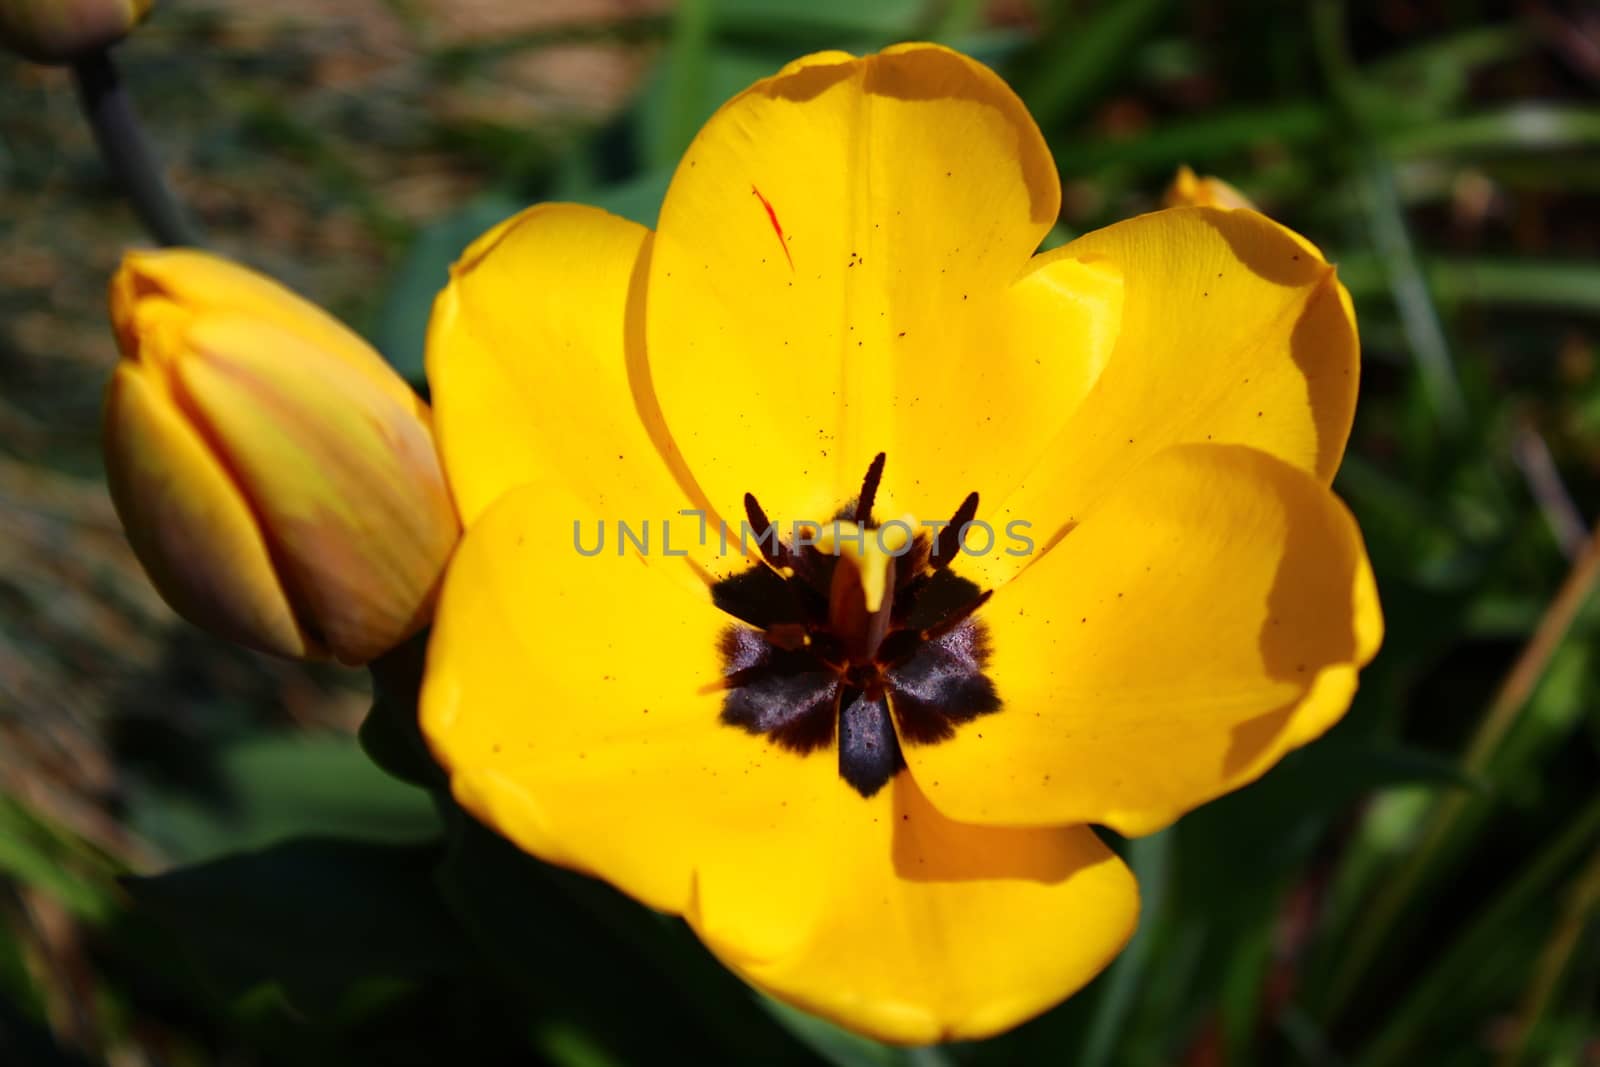 yellow tulips in the garden by martina_unbehauen